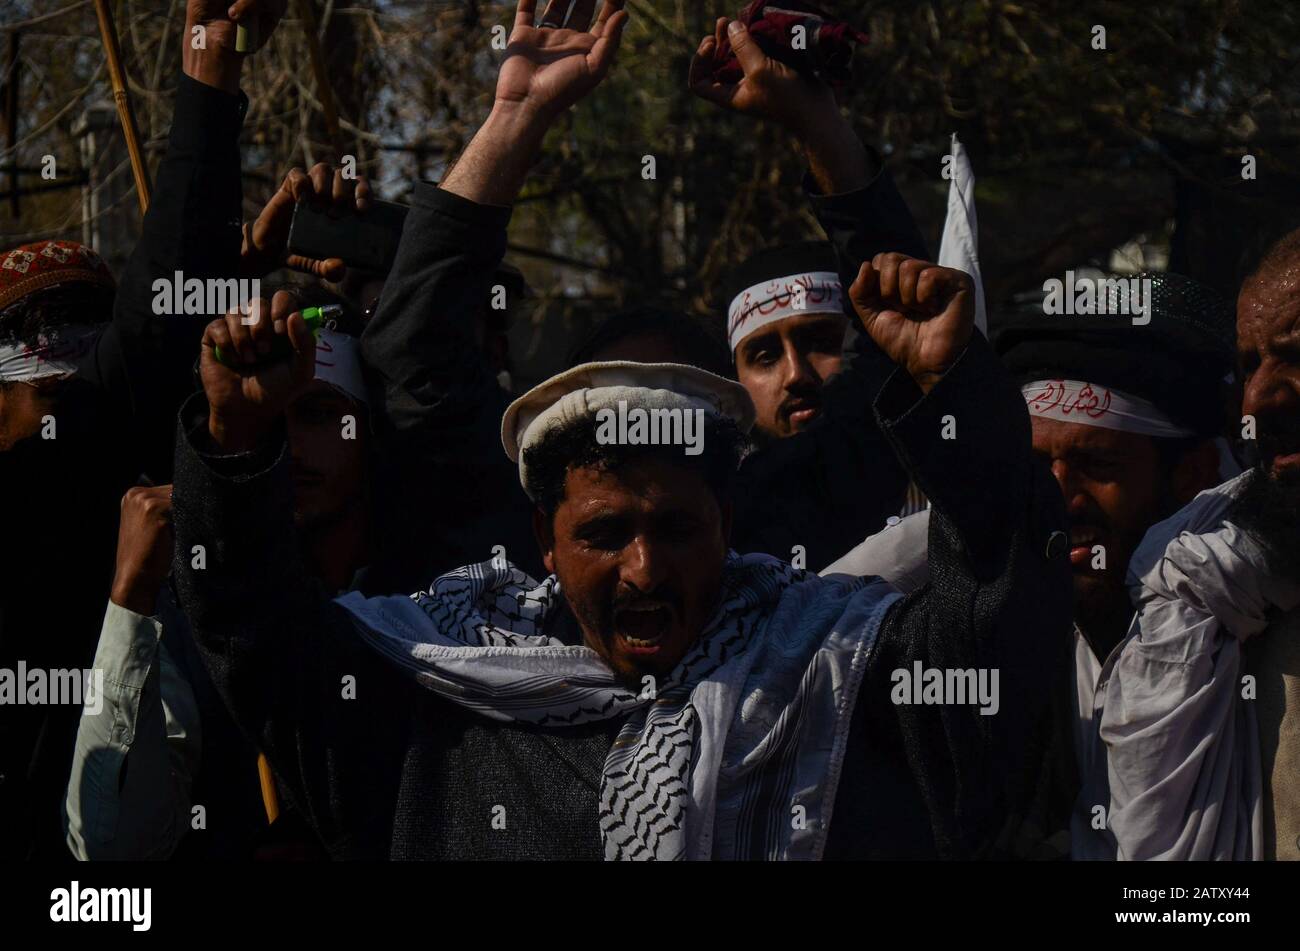 Februar 2020: Peschawar, Pakistan. Februar 2020. Die Pakistaner inszenieren einen Protest zum Kaschmir-Solidaritätstag in der pakistanischen Stadt Peshawar. Die Teilnehmer winkten Banner und skandierten Slogans zur Unterstützung Indiens verwalteten Kaschmir und Kasmiris Kampf um ihr Recht auf Selbstbestimmung. Die indianische Flagge und ein Effigie des indischen Präsidenten Narendra Modi wurden während des Protestes am Mittwoch in Aufleuchten gebracht. Kinder schlossen sich auch der Kundgebung an, die Pakistan und die Flagge Azad Jammu und Kaschmirs in Solidarität mit den Kaschmiris schwenkte. Der indische Staat Jammu und Kaschmir war stark eingeschränkt Stockfoto